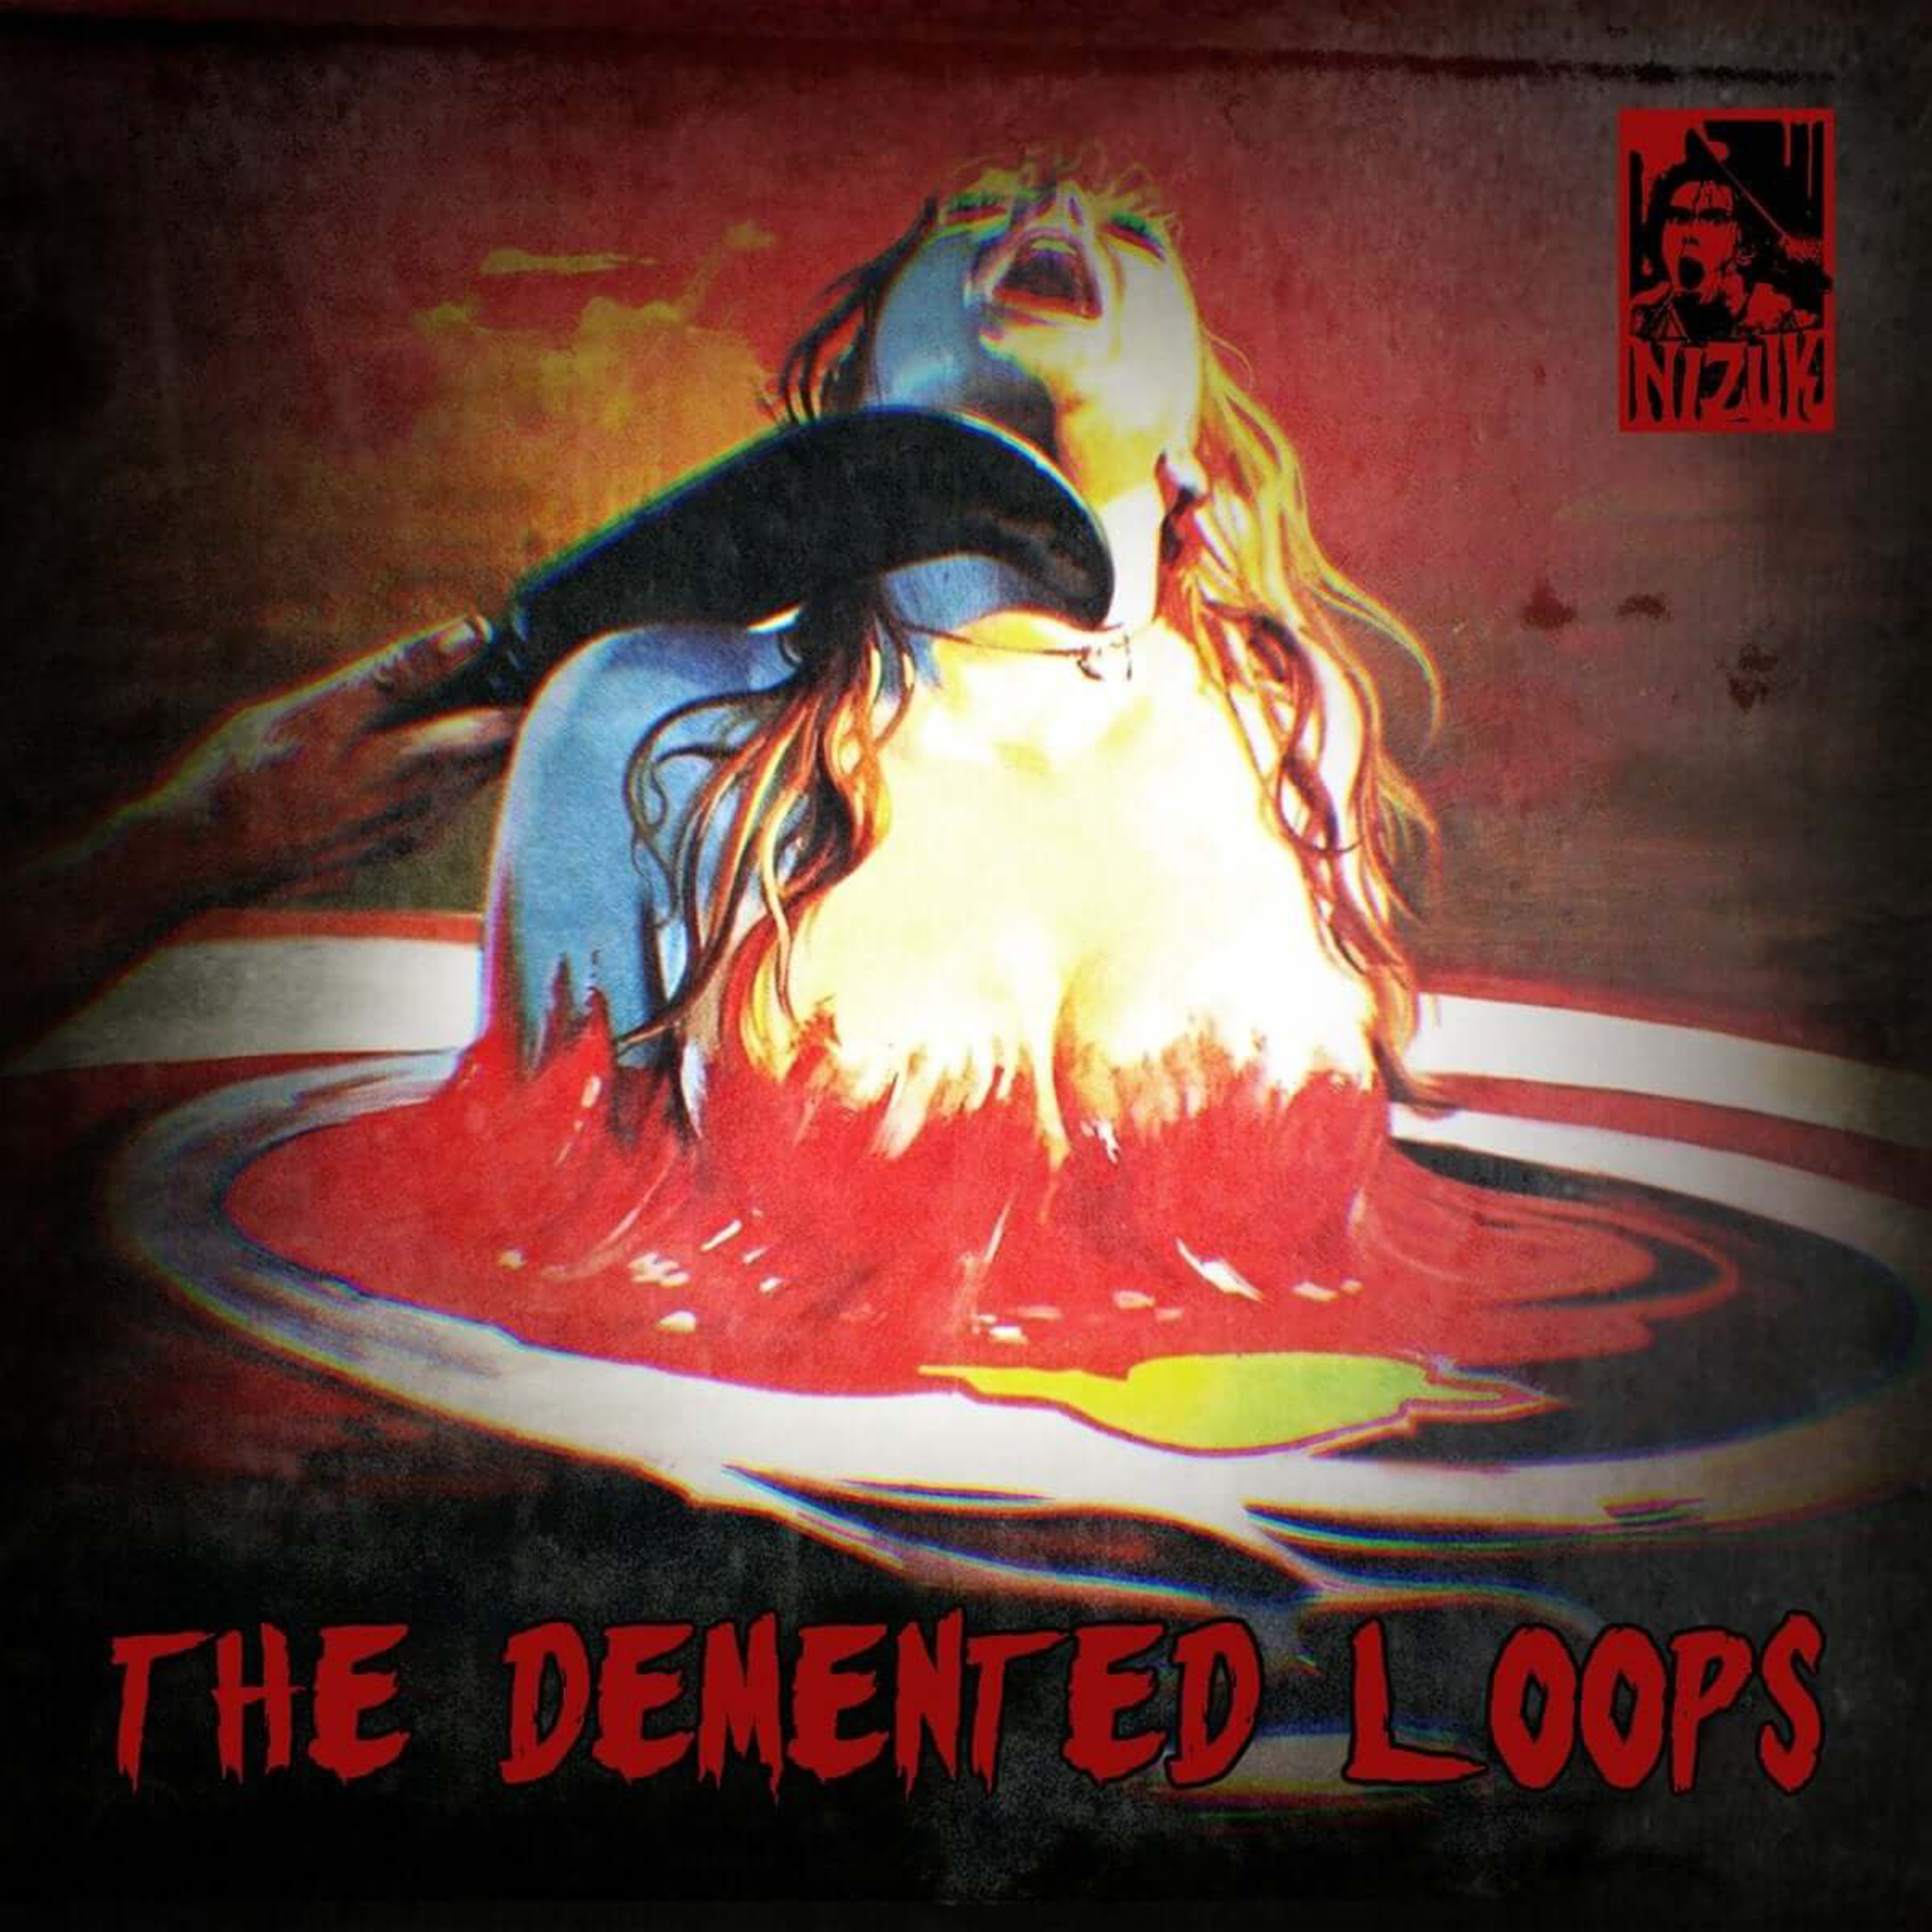 Beat Tape Hip Hop Old School du beatmaker Boom Bap Nizuk, The Demented Loops est un projet instrumental aux sonorités sombres, disponible au format CD.